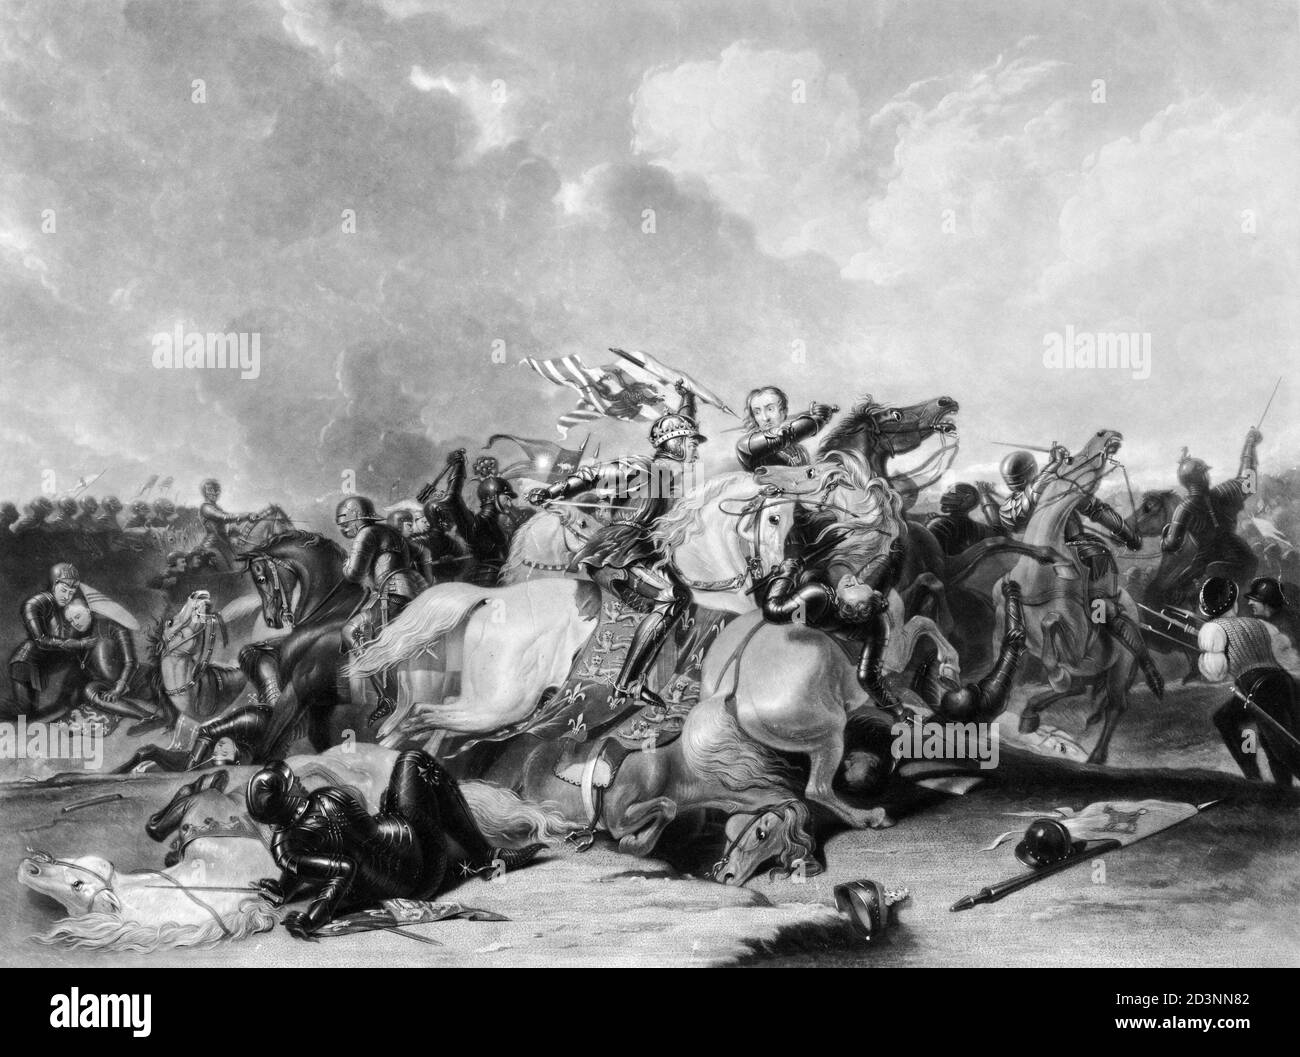 La batalla de Bosworth Field, la última batalla significativa en las guerras de las Rosas, 1485. Richard III está a caballo con una espada. Imprimir desde 1835. Foto de stock